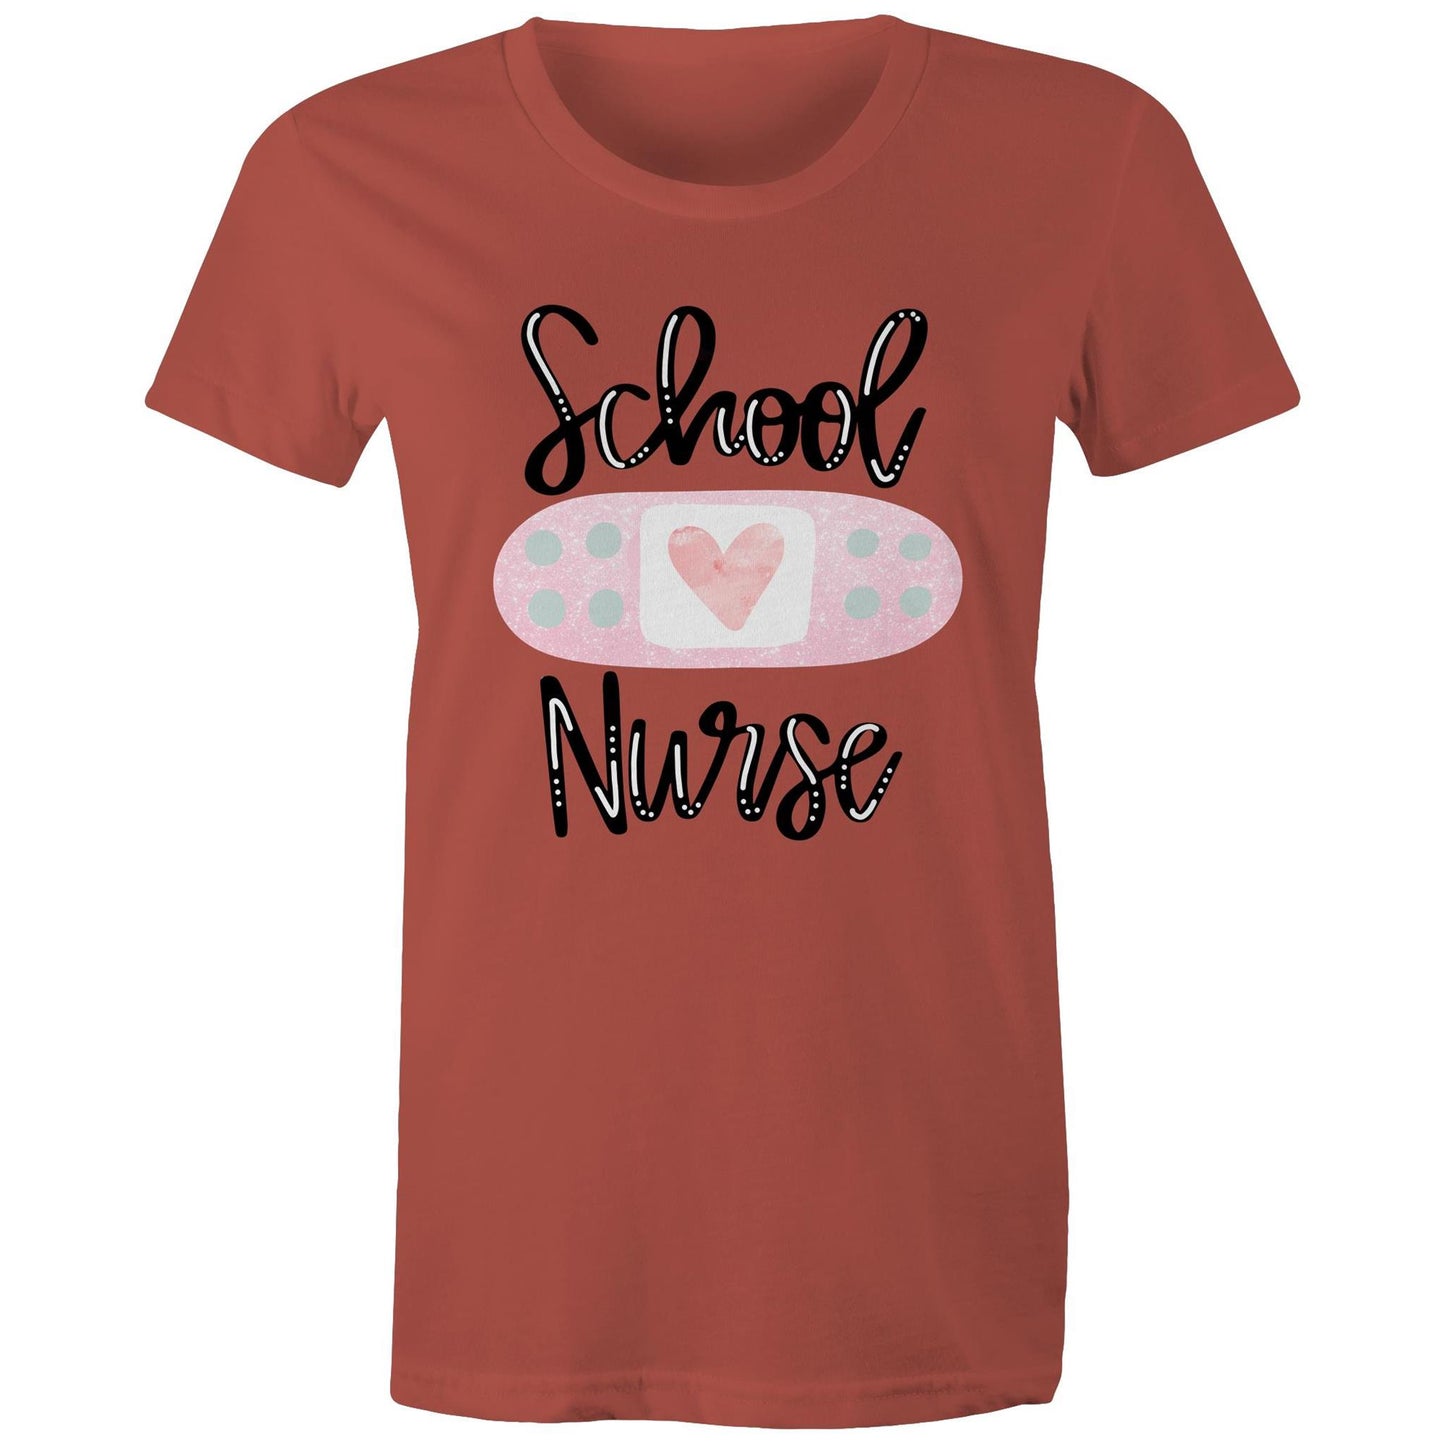 School Nurse Women's Maple Tee